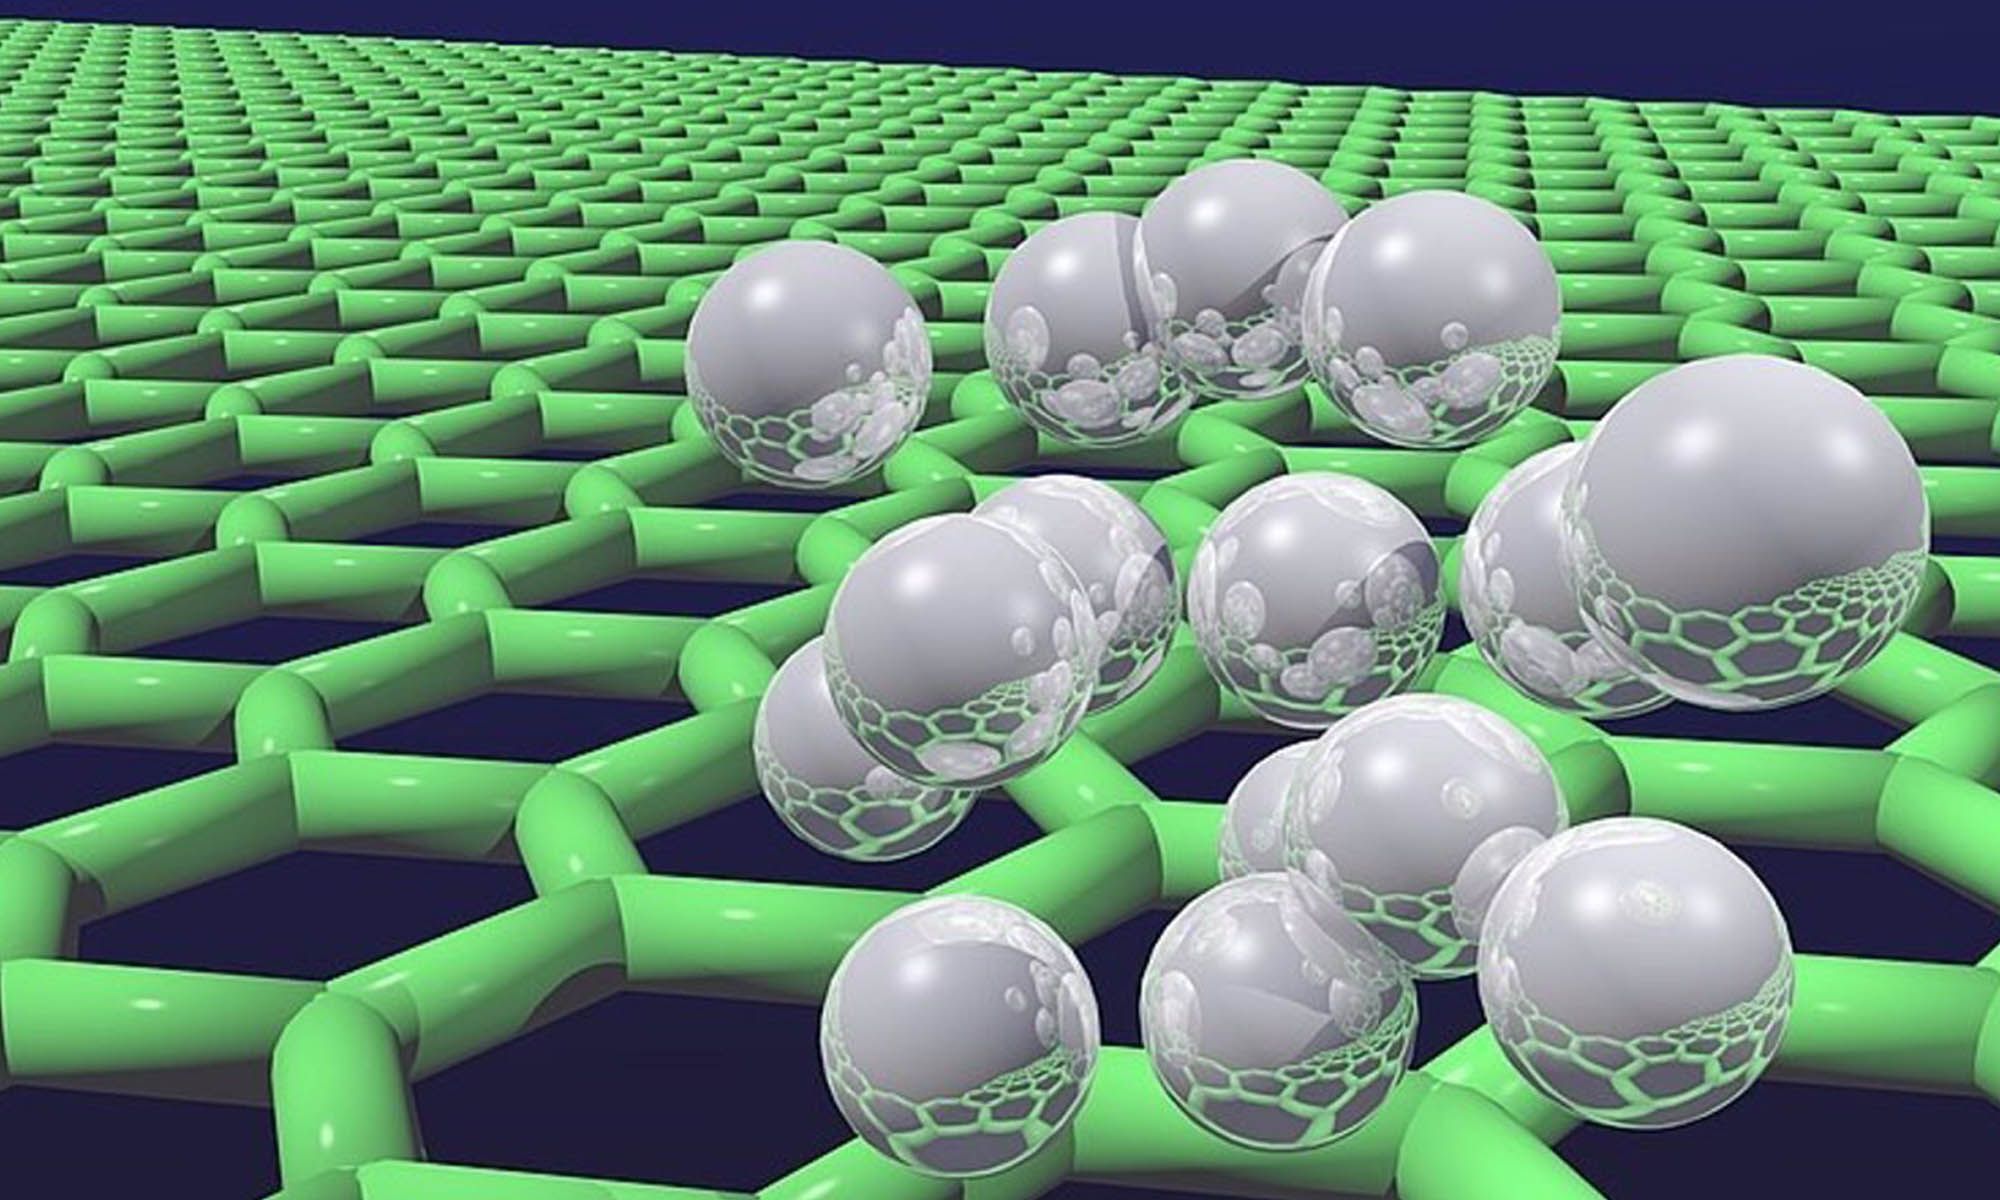 New material technology. Нанотехнологии и наноматериалы. Полимерные материалы будущего. Полимерные наноматериалы. Разработка новых материалов.